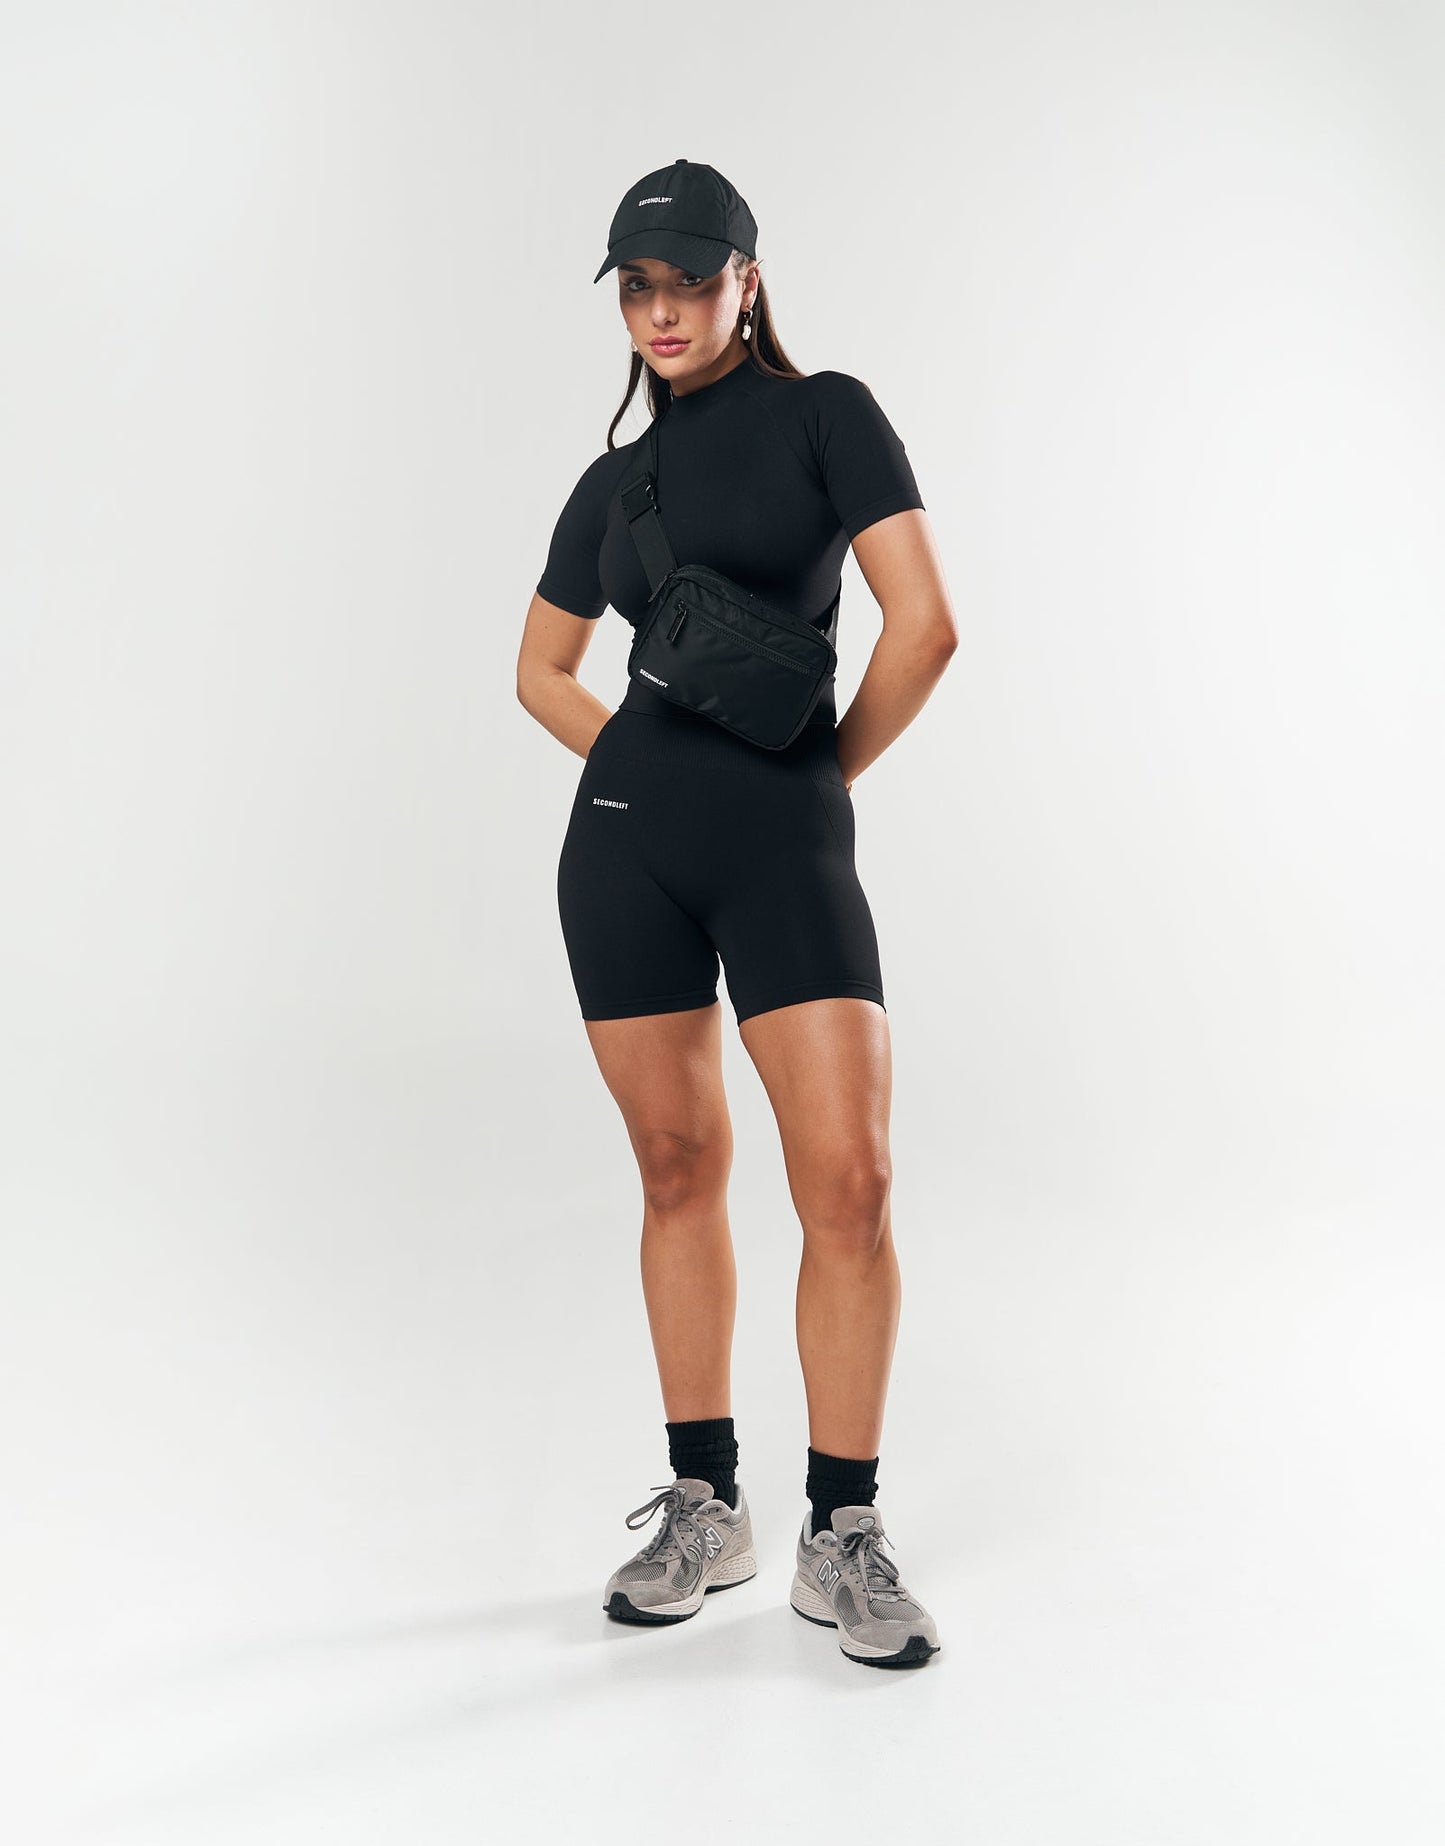 Seamless Midi Biker Shorts - Black